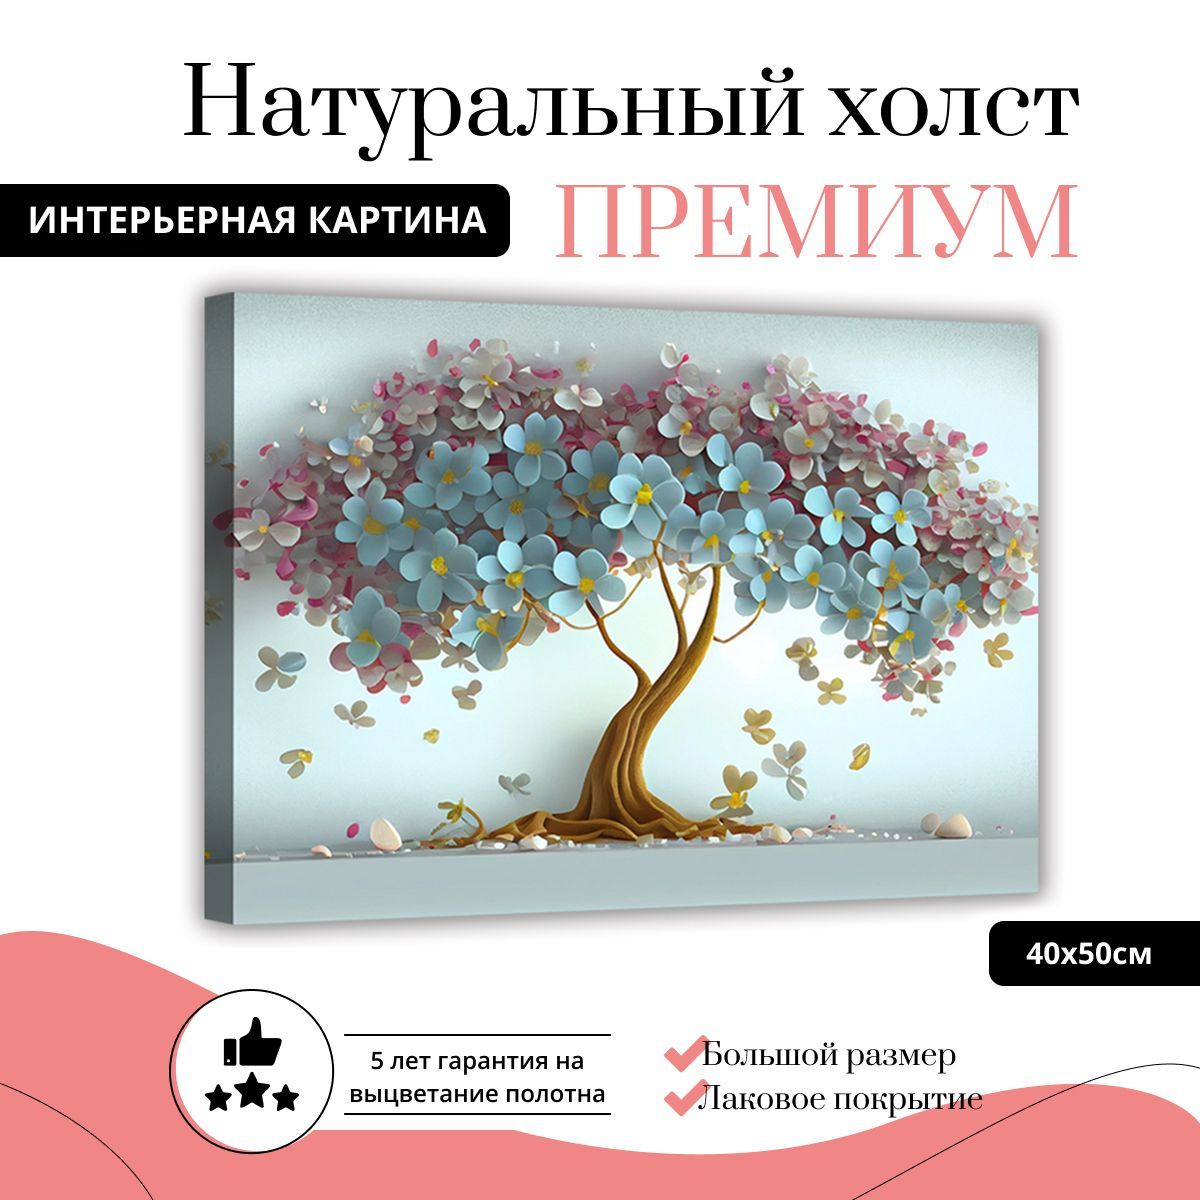 Картина ДоброДаров: Дерево на голубом на натуральном холсте, размер 40х50 см, инвентарный номер XL0352-ХОЛСТ.